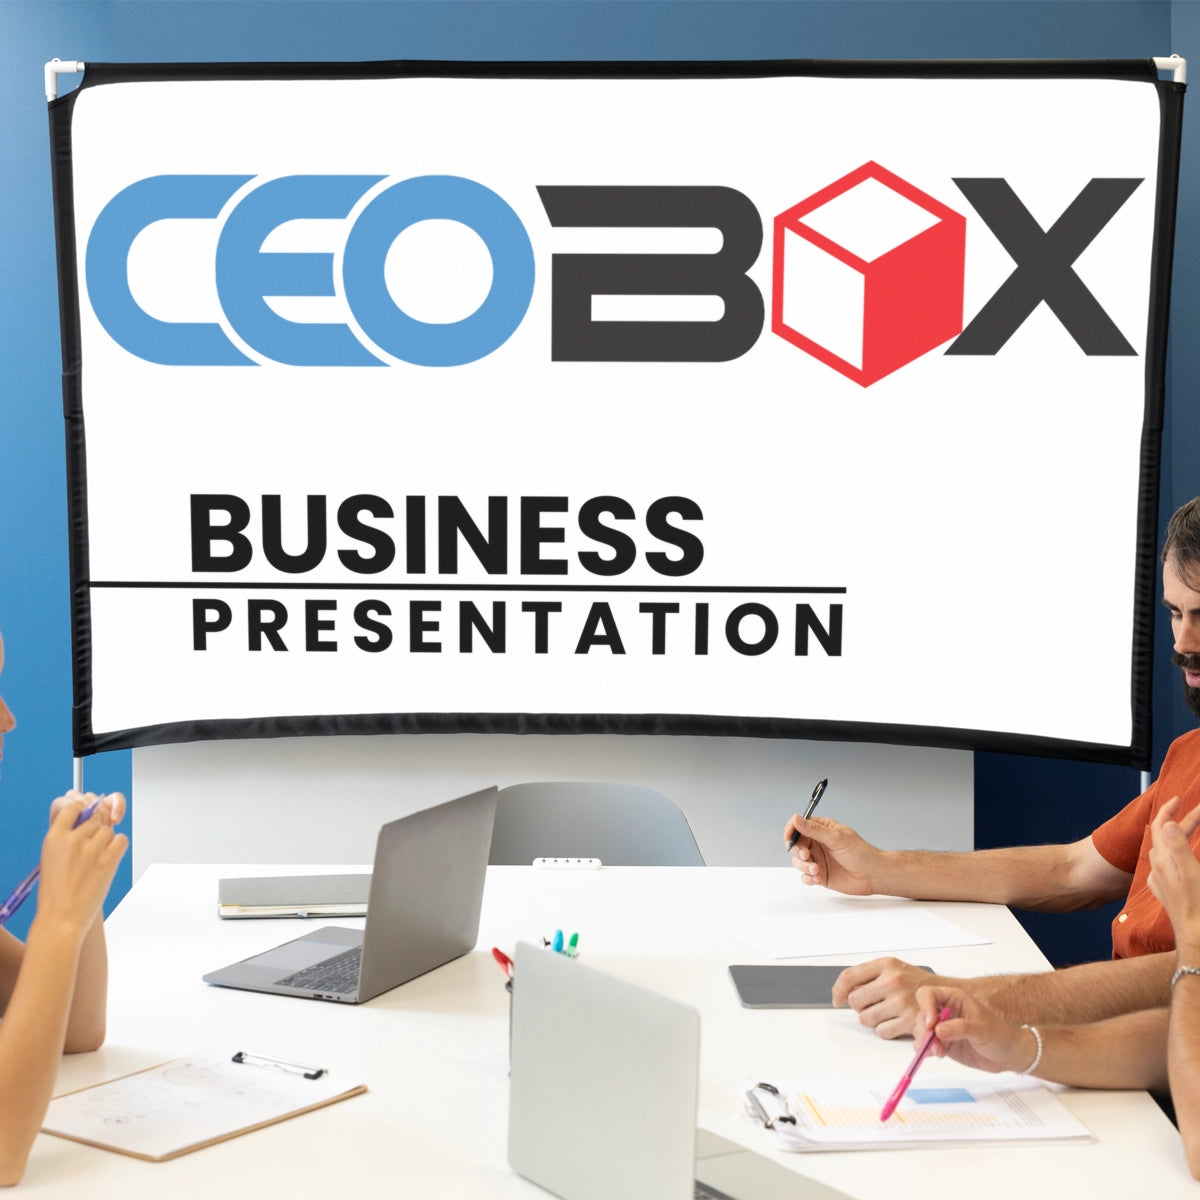 CEOBOX.com